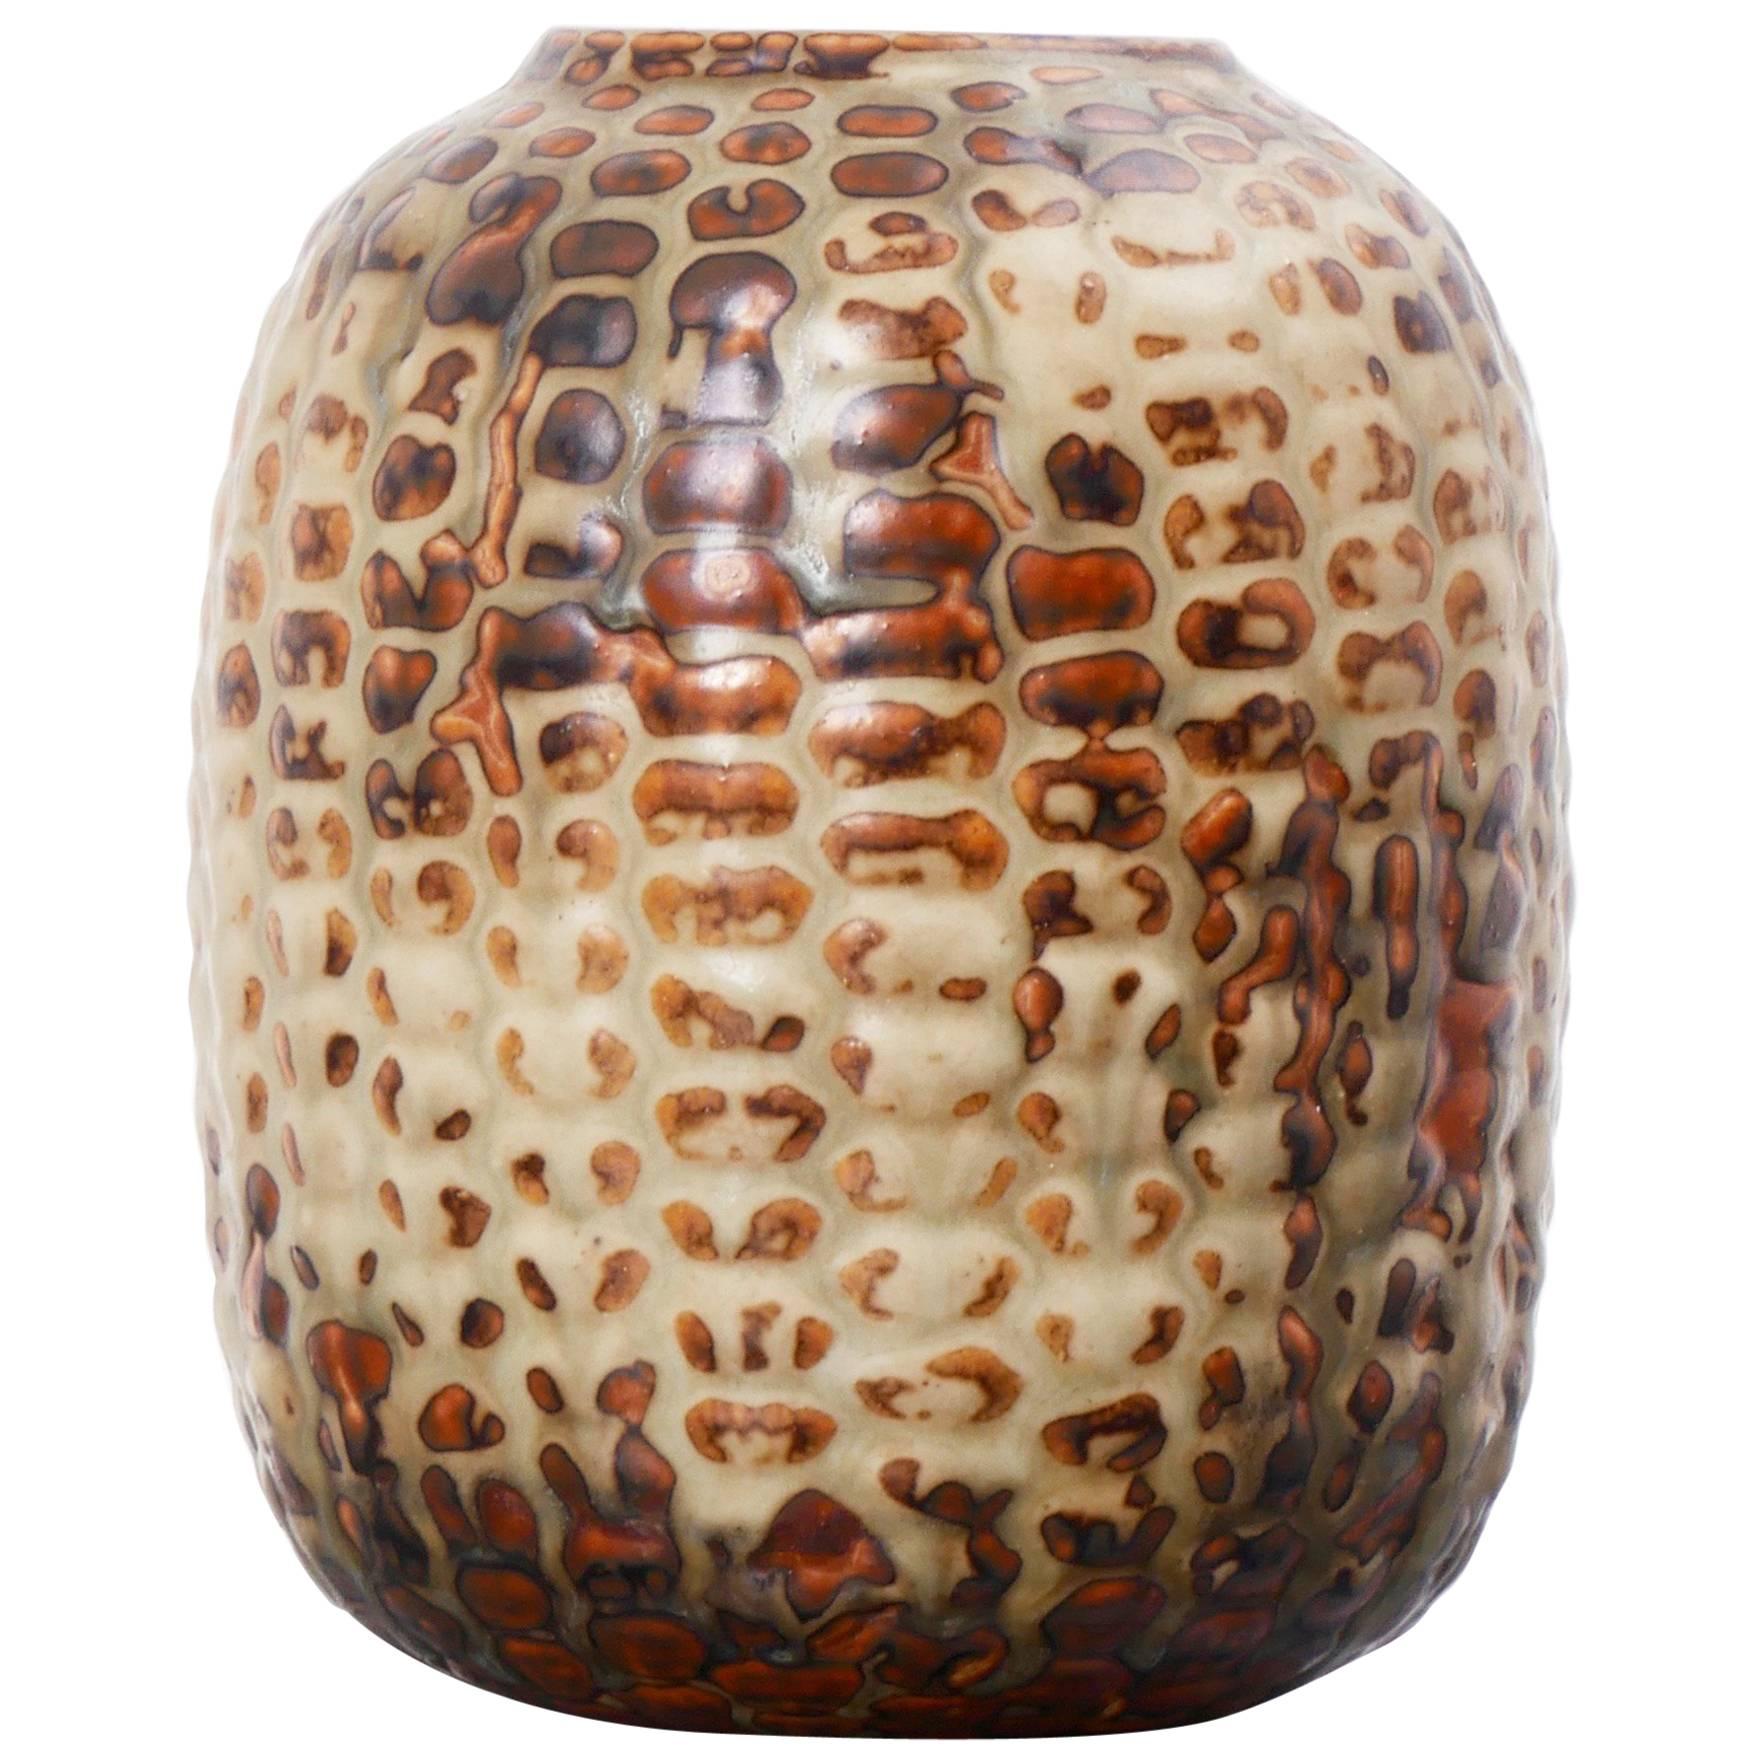 AXEL SALTO Budding Vase in Glazed Ceramic